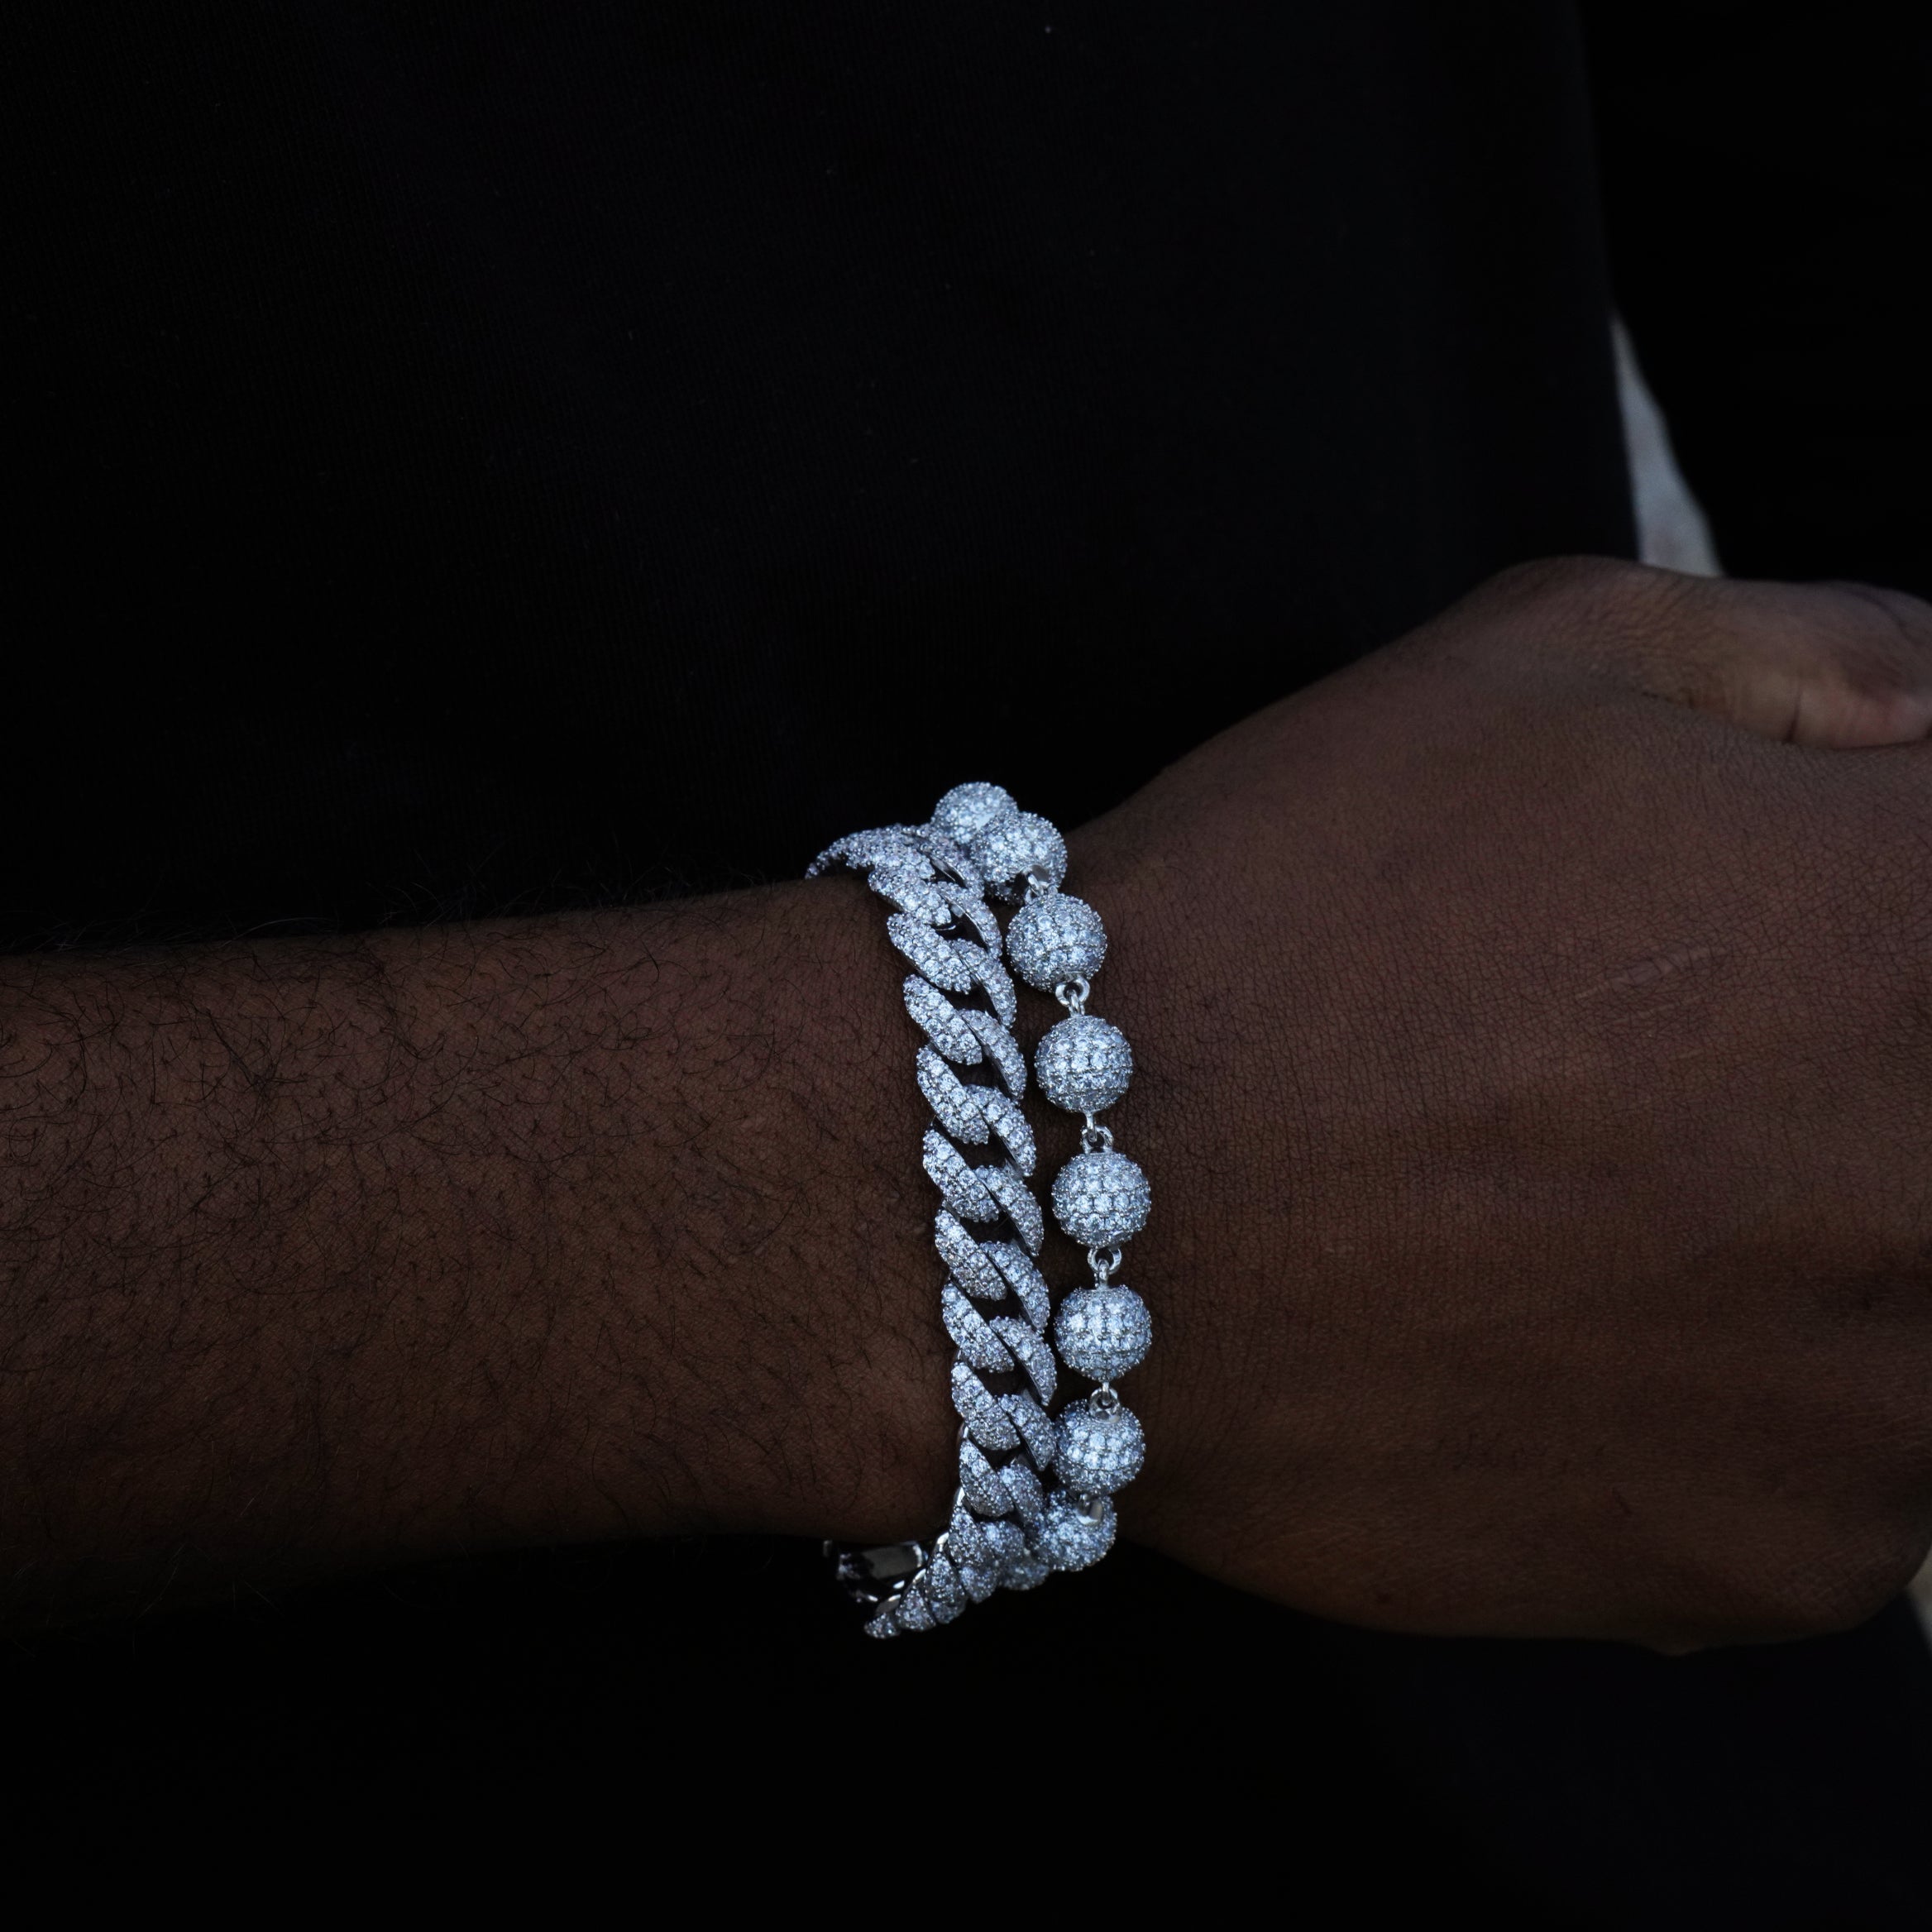 8mm Iced Beads Bracelet